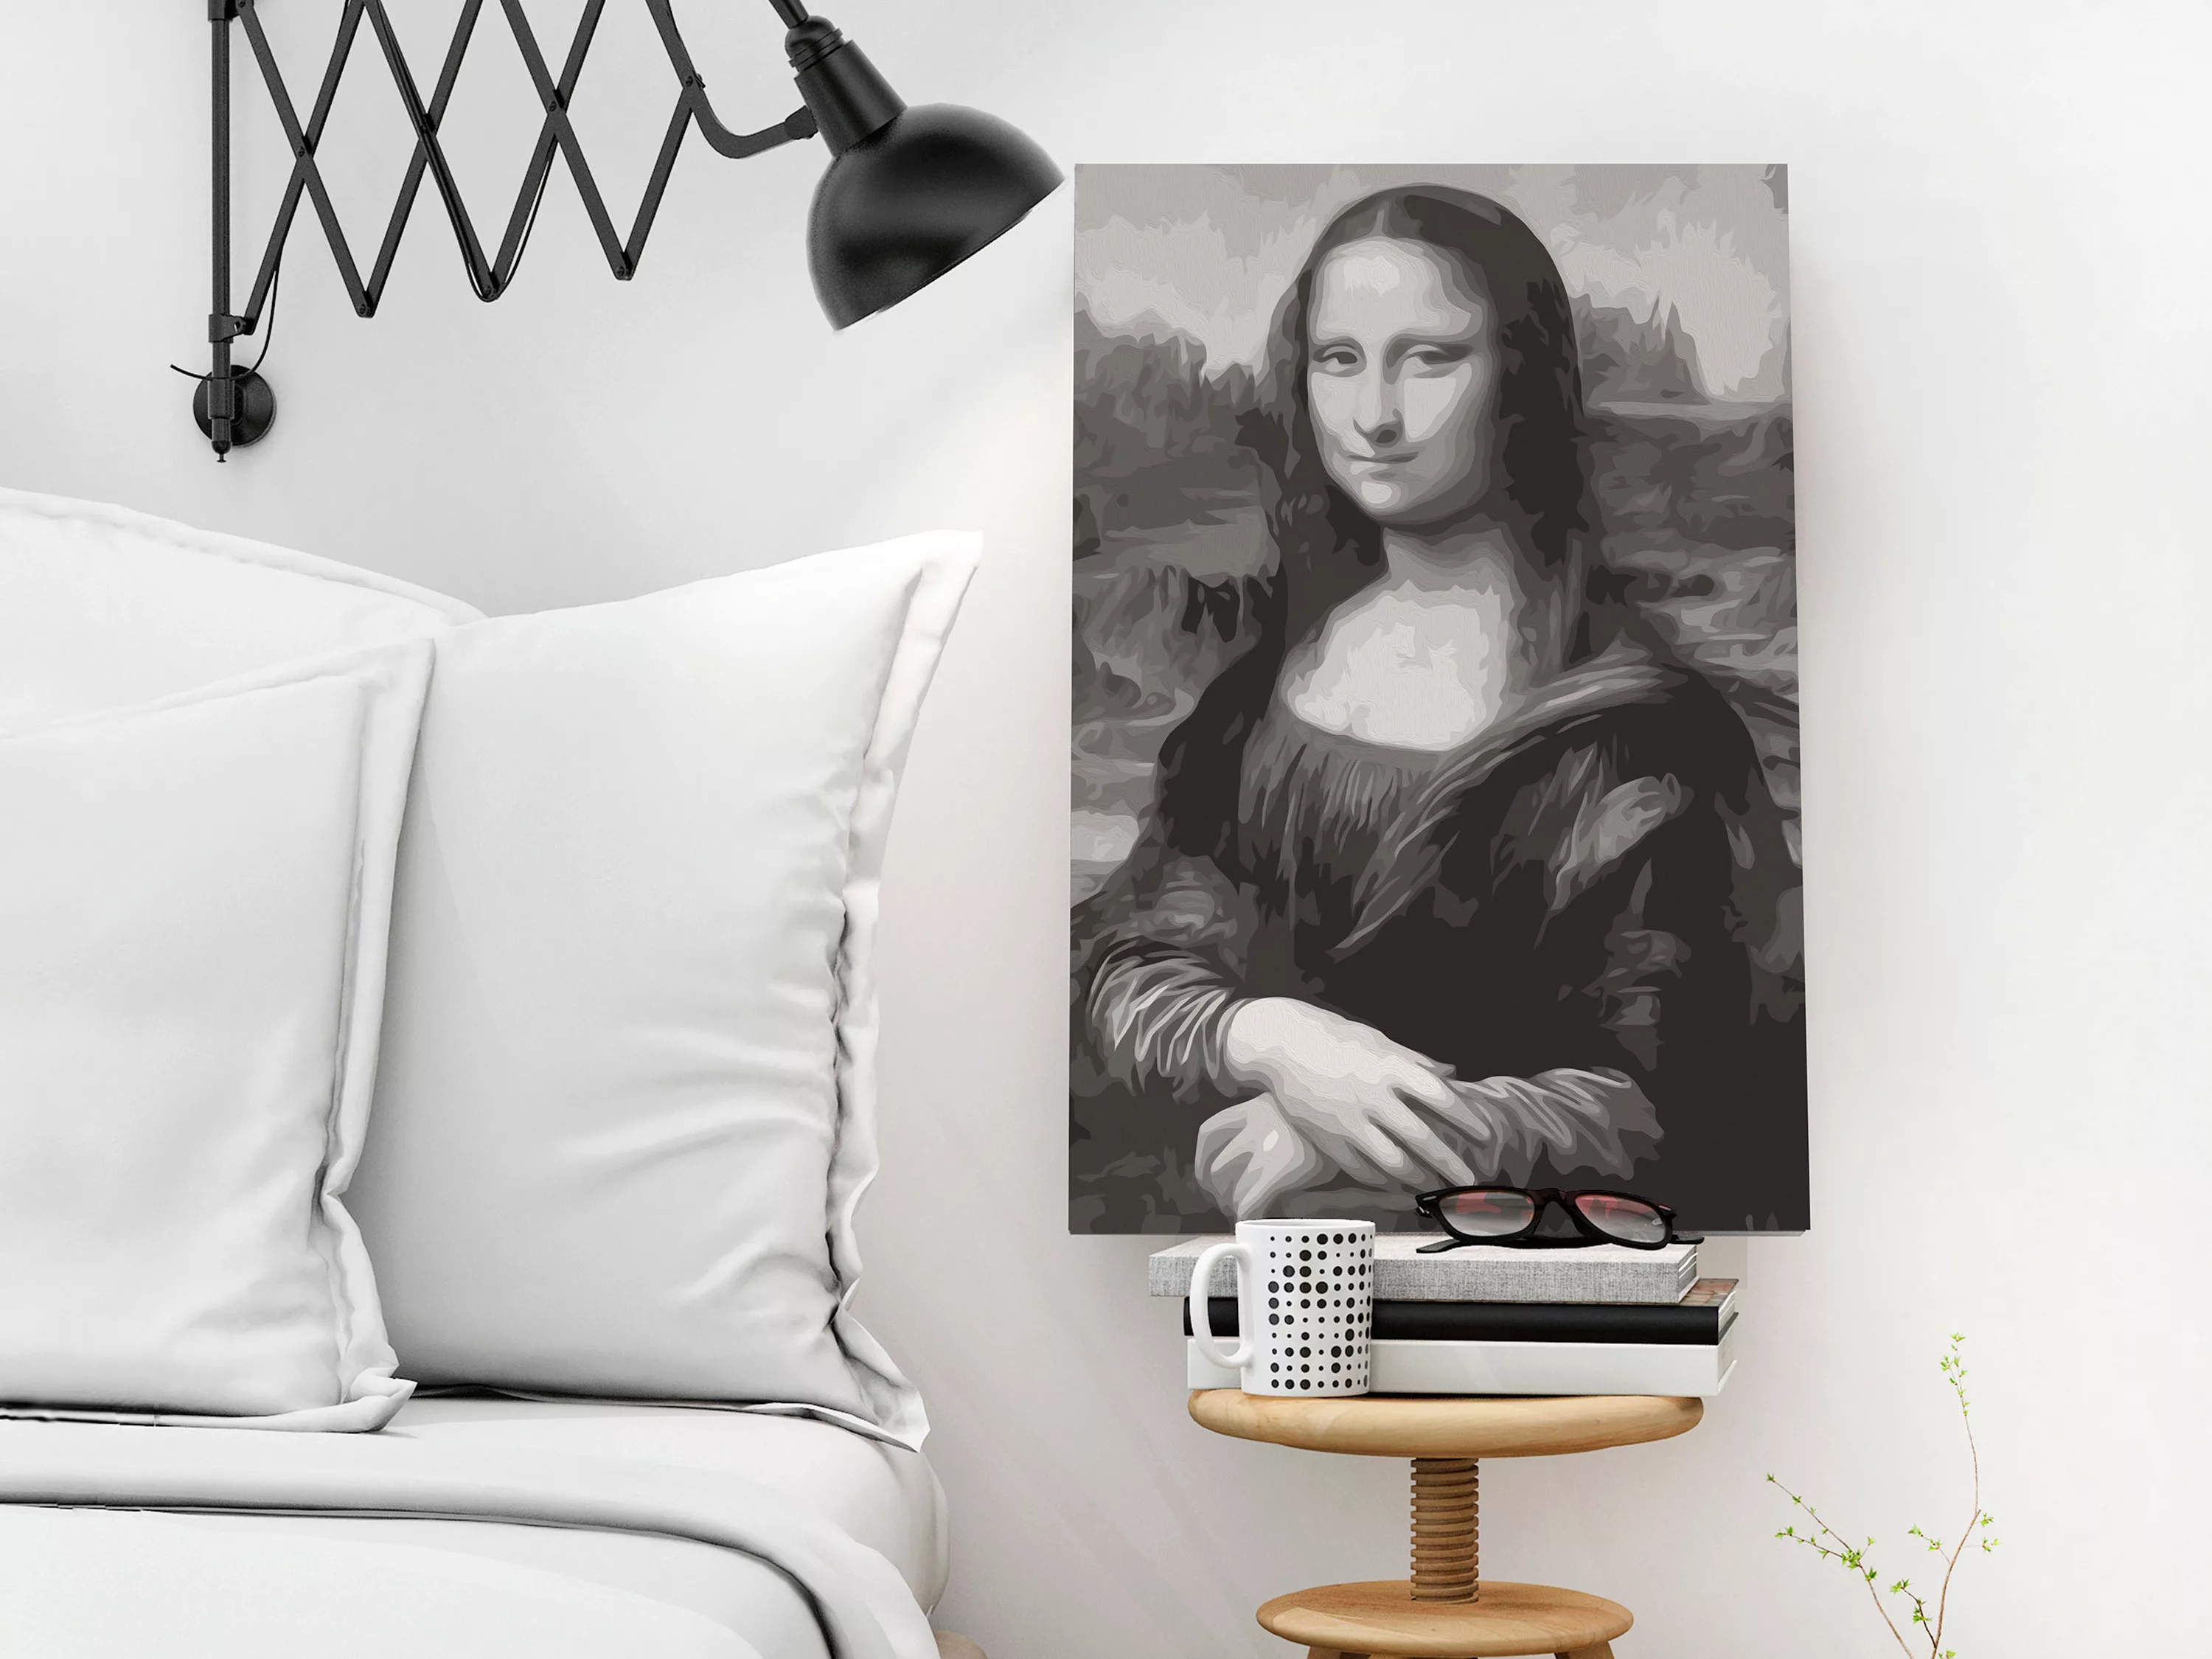 Malen Nach Zahlen - Black And White Mona Lisa günstig online kaufen